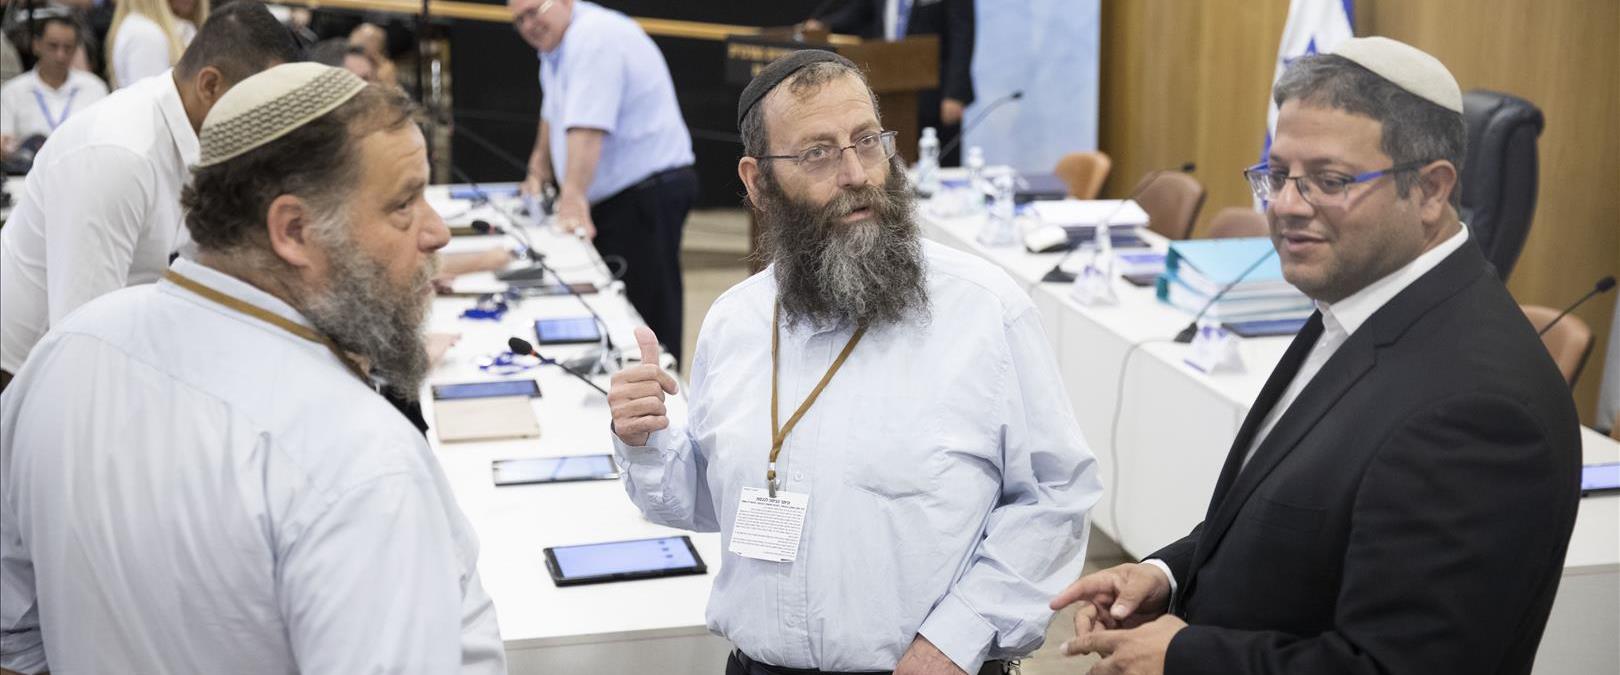 אנשי עוצמה יהודית בדיון בוועדת הבחירות, אוגוסט 201